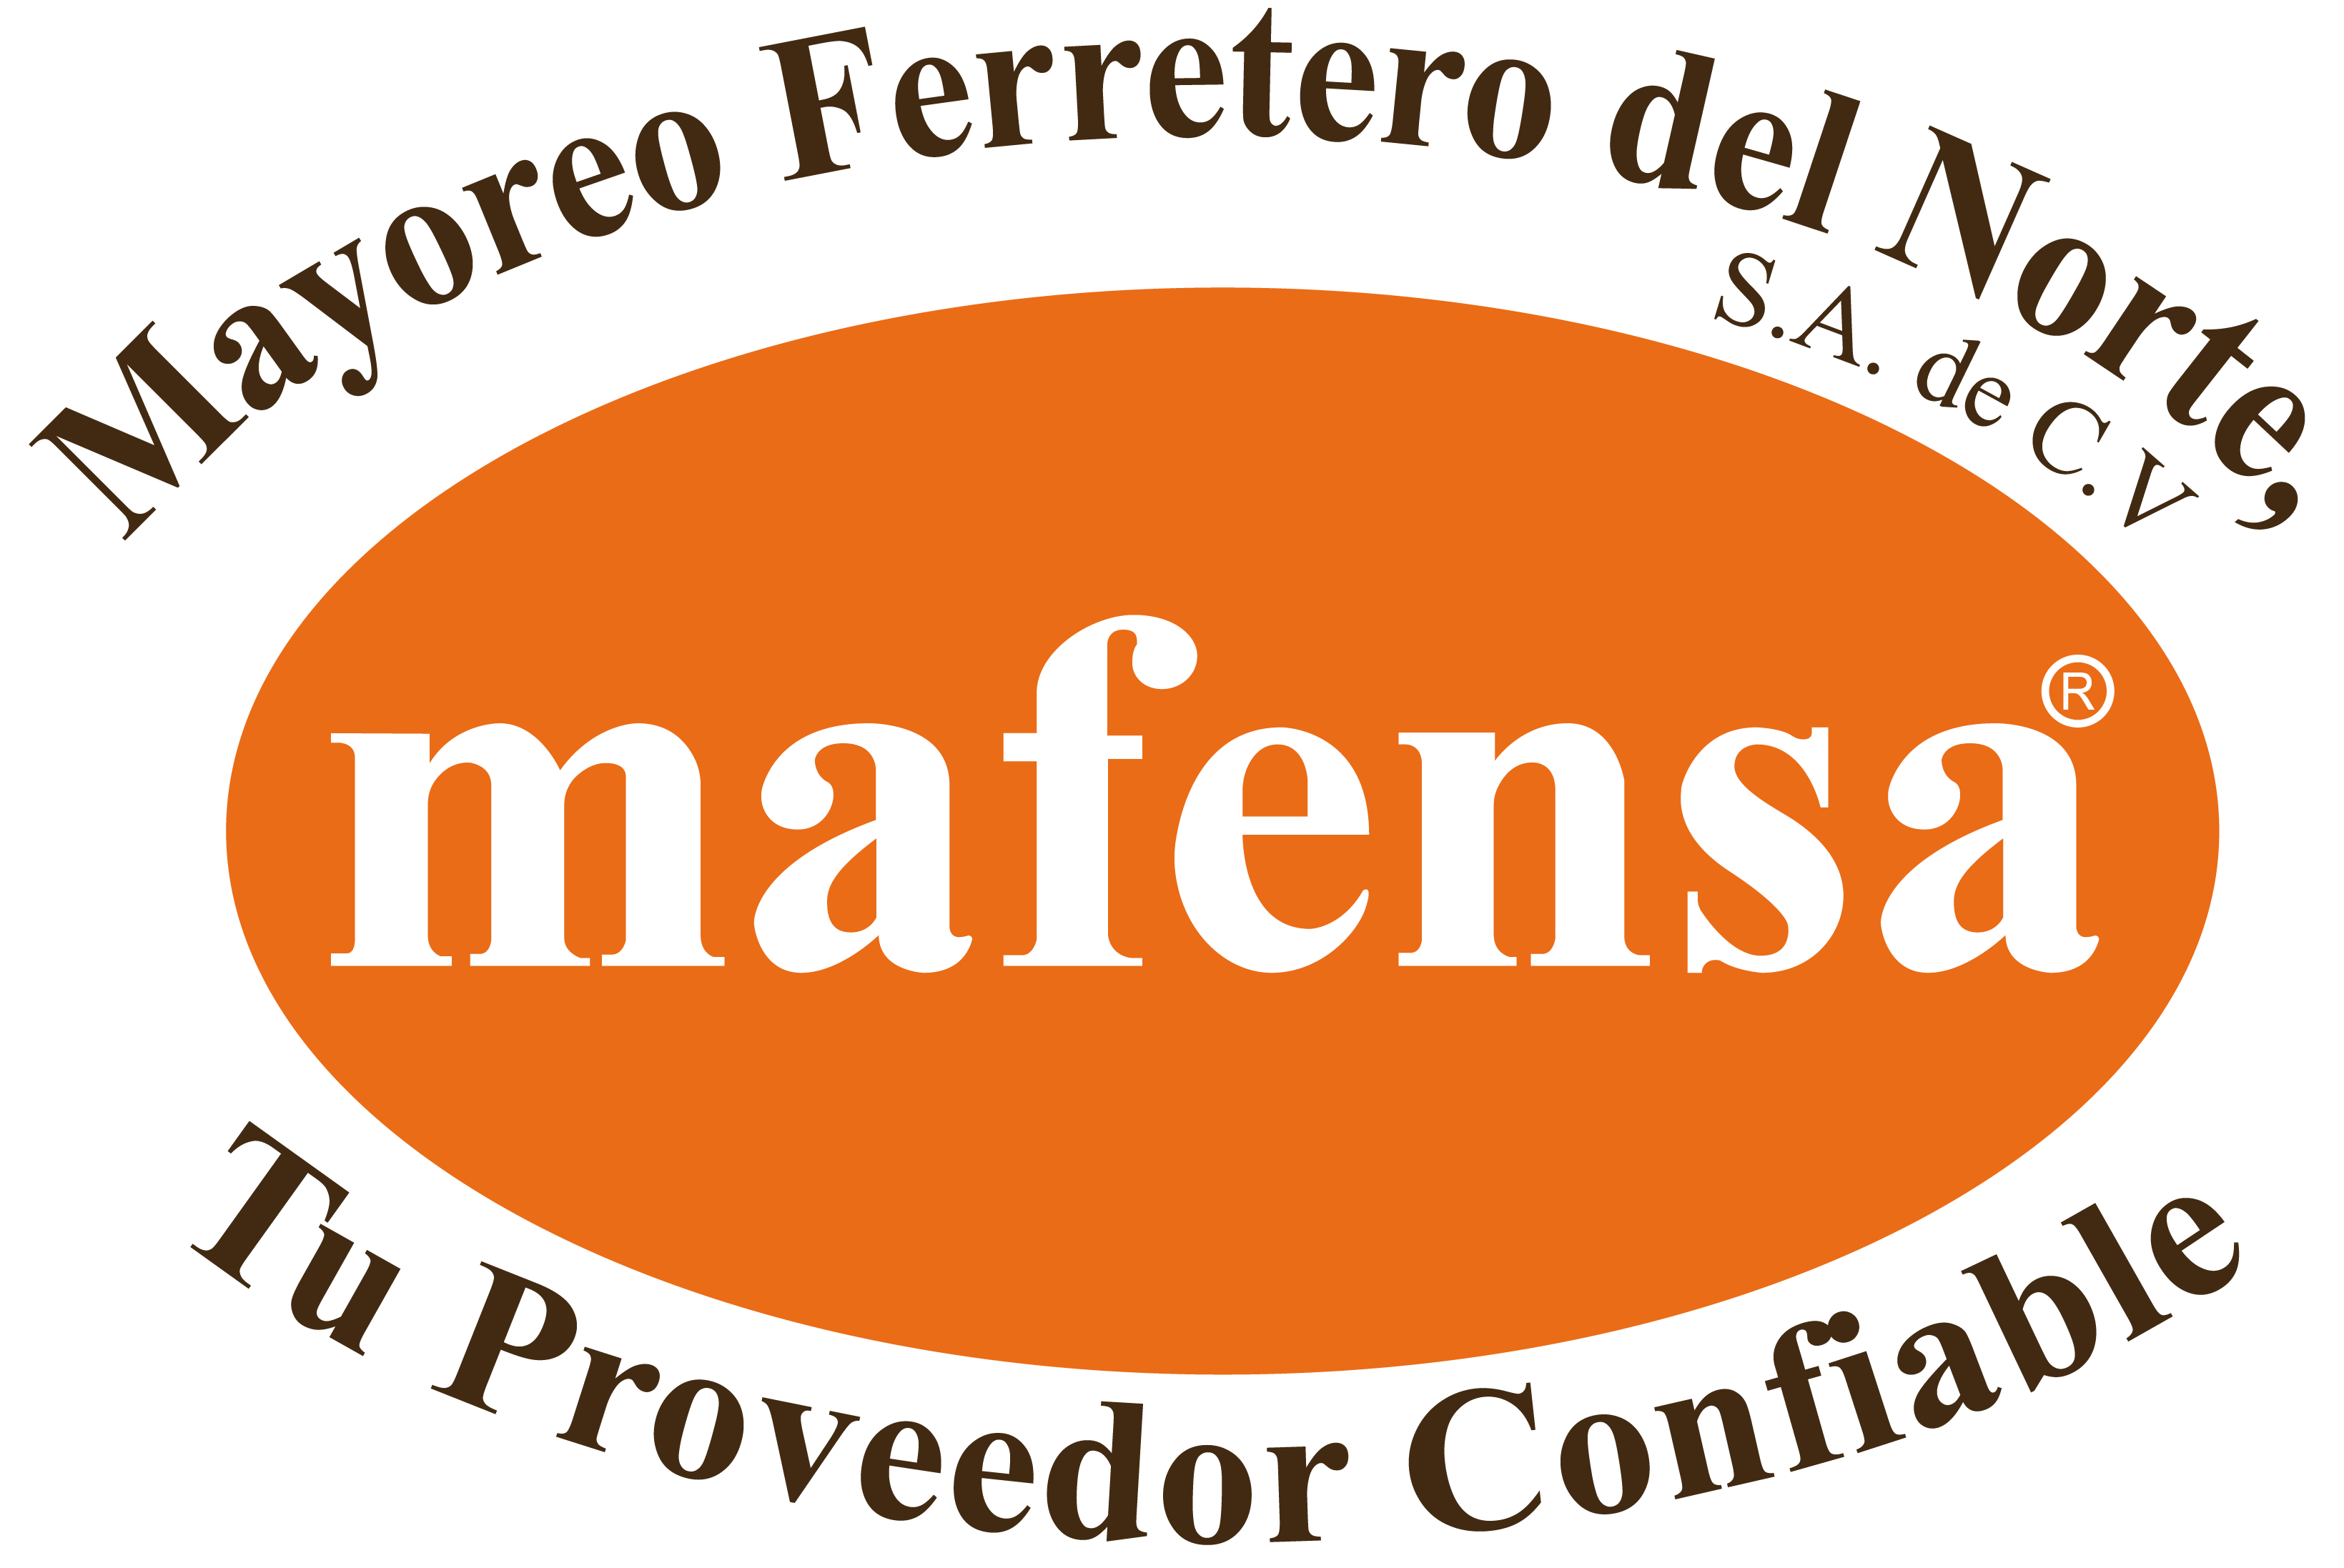 MAFENSA Logotipo Completo | Mayoreo Ferretero del Norte S.A. de C.V.